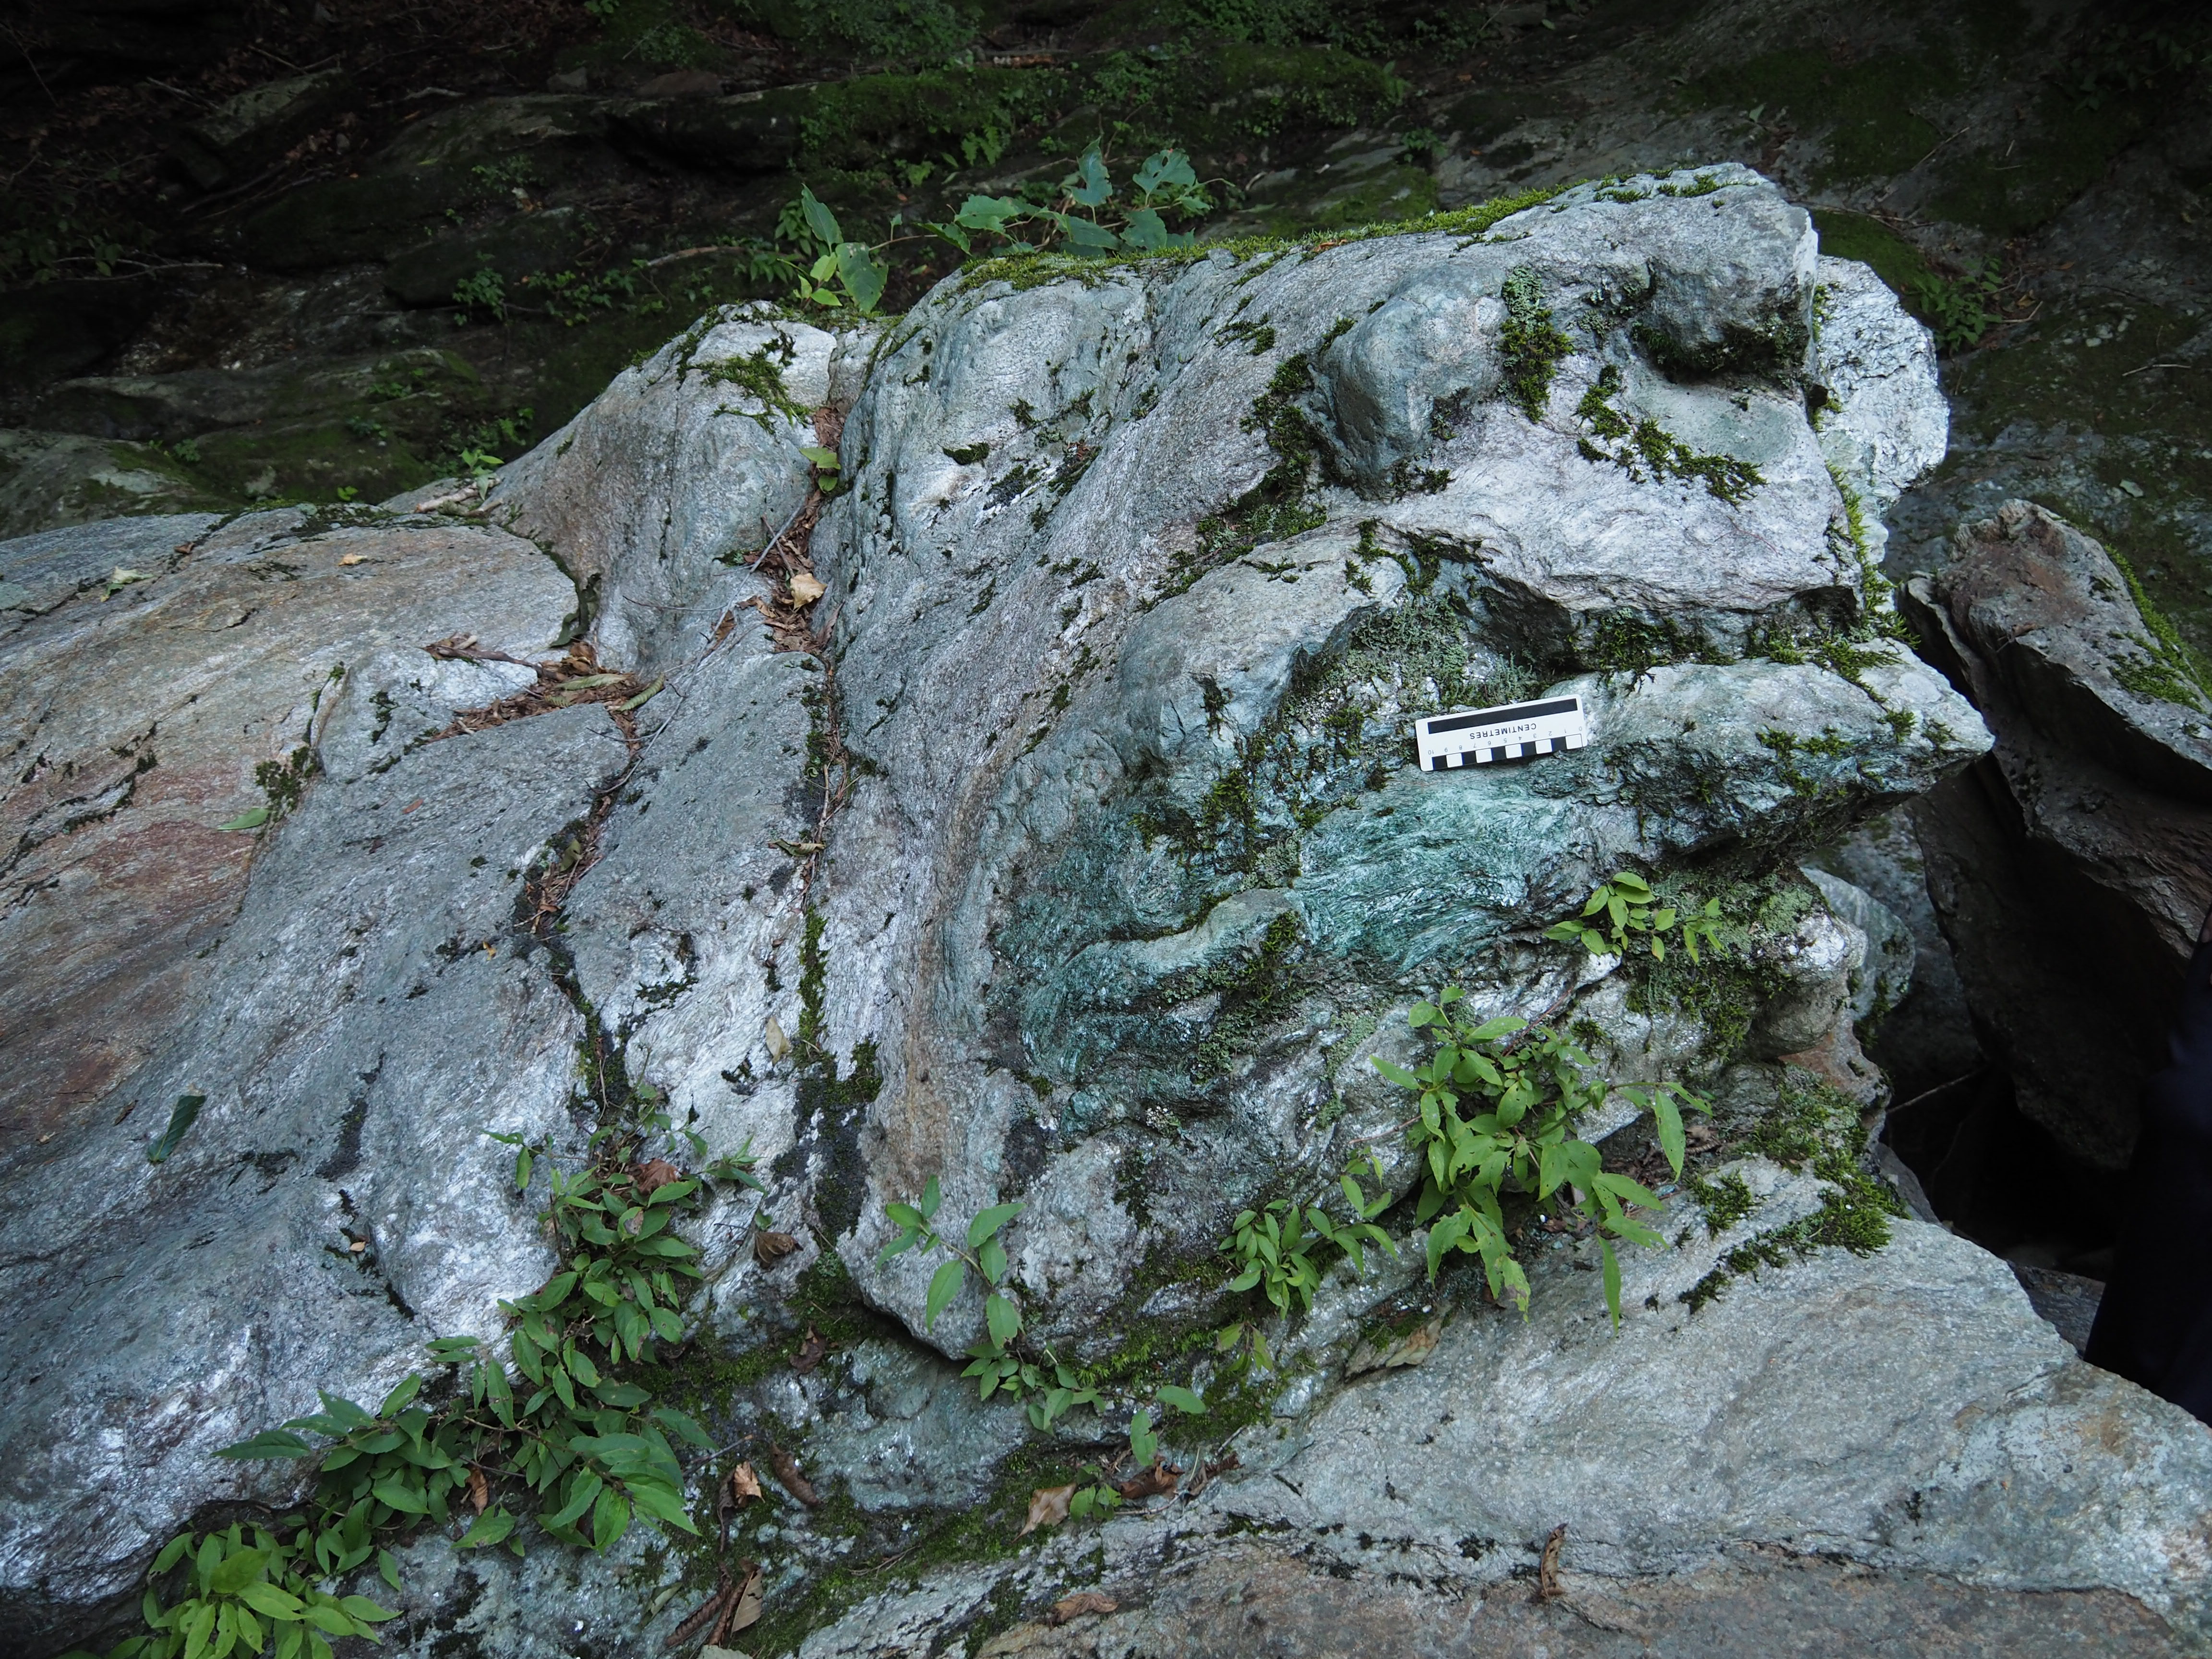 埼玉県 長瀞 虎岩 結晶片岩 スティルプノメレン片岩と緑色片岩はミックスされたようになっている。